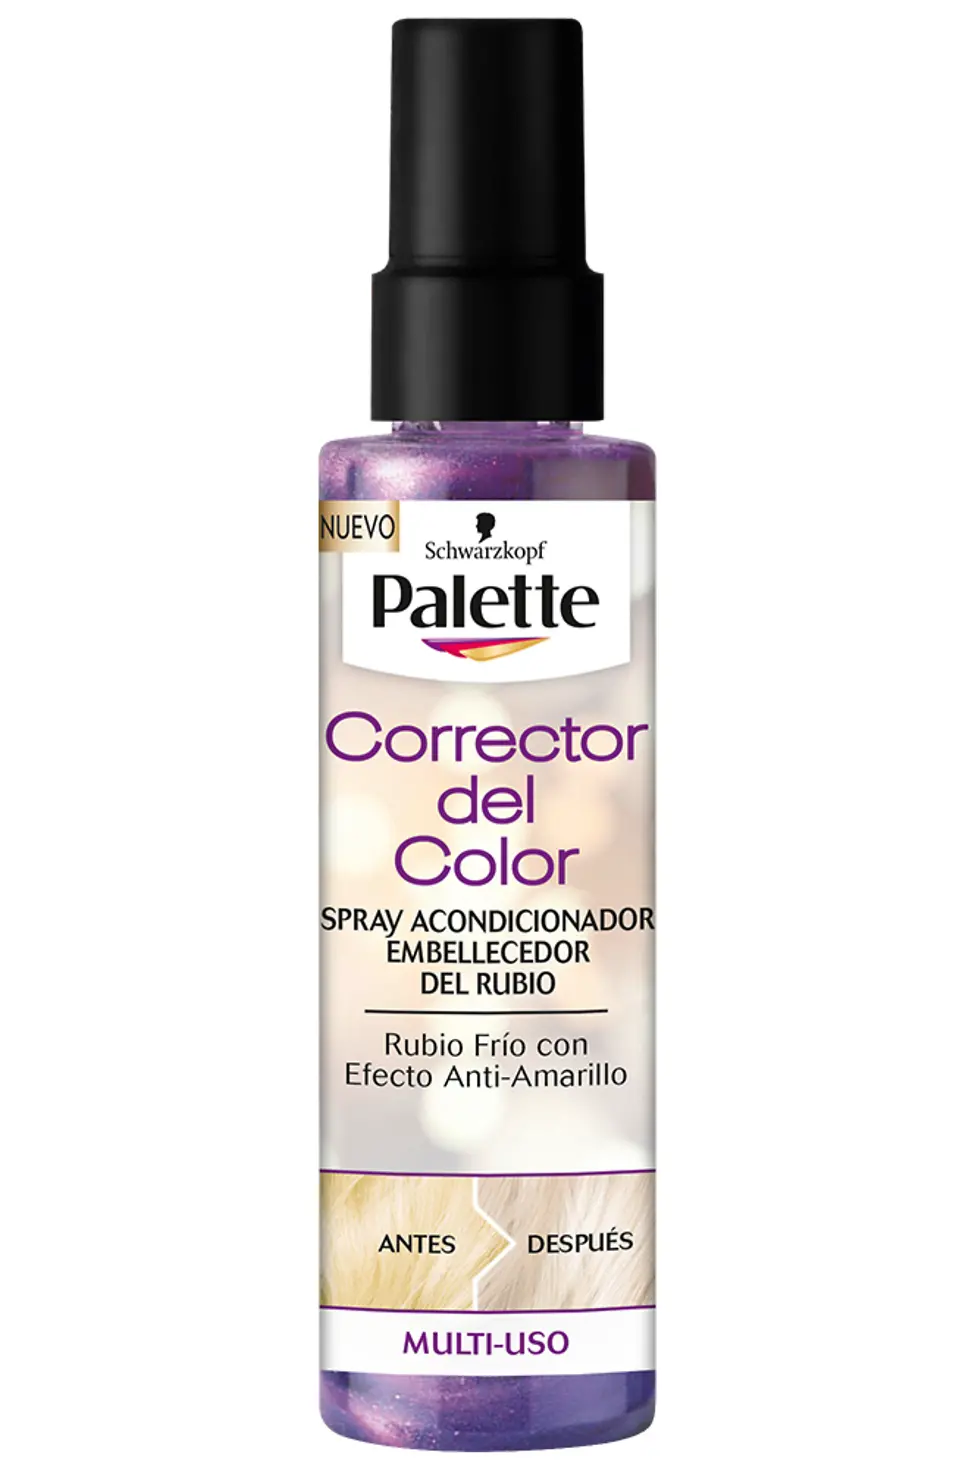 Palette Spray Corrector del Color: La solución para mantener un rubio perfecto